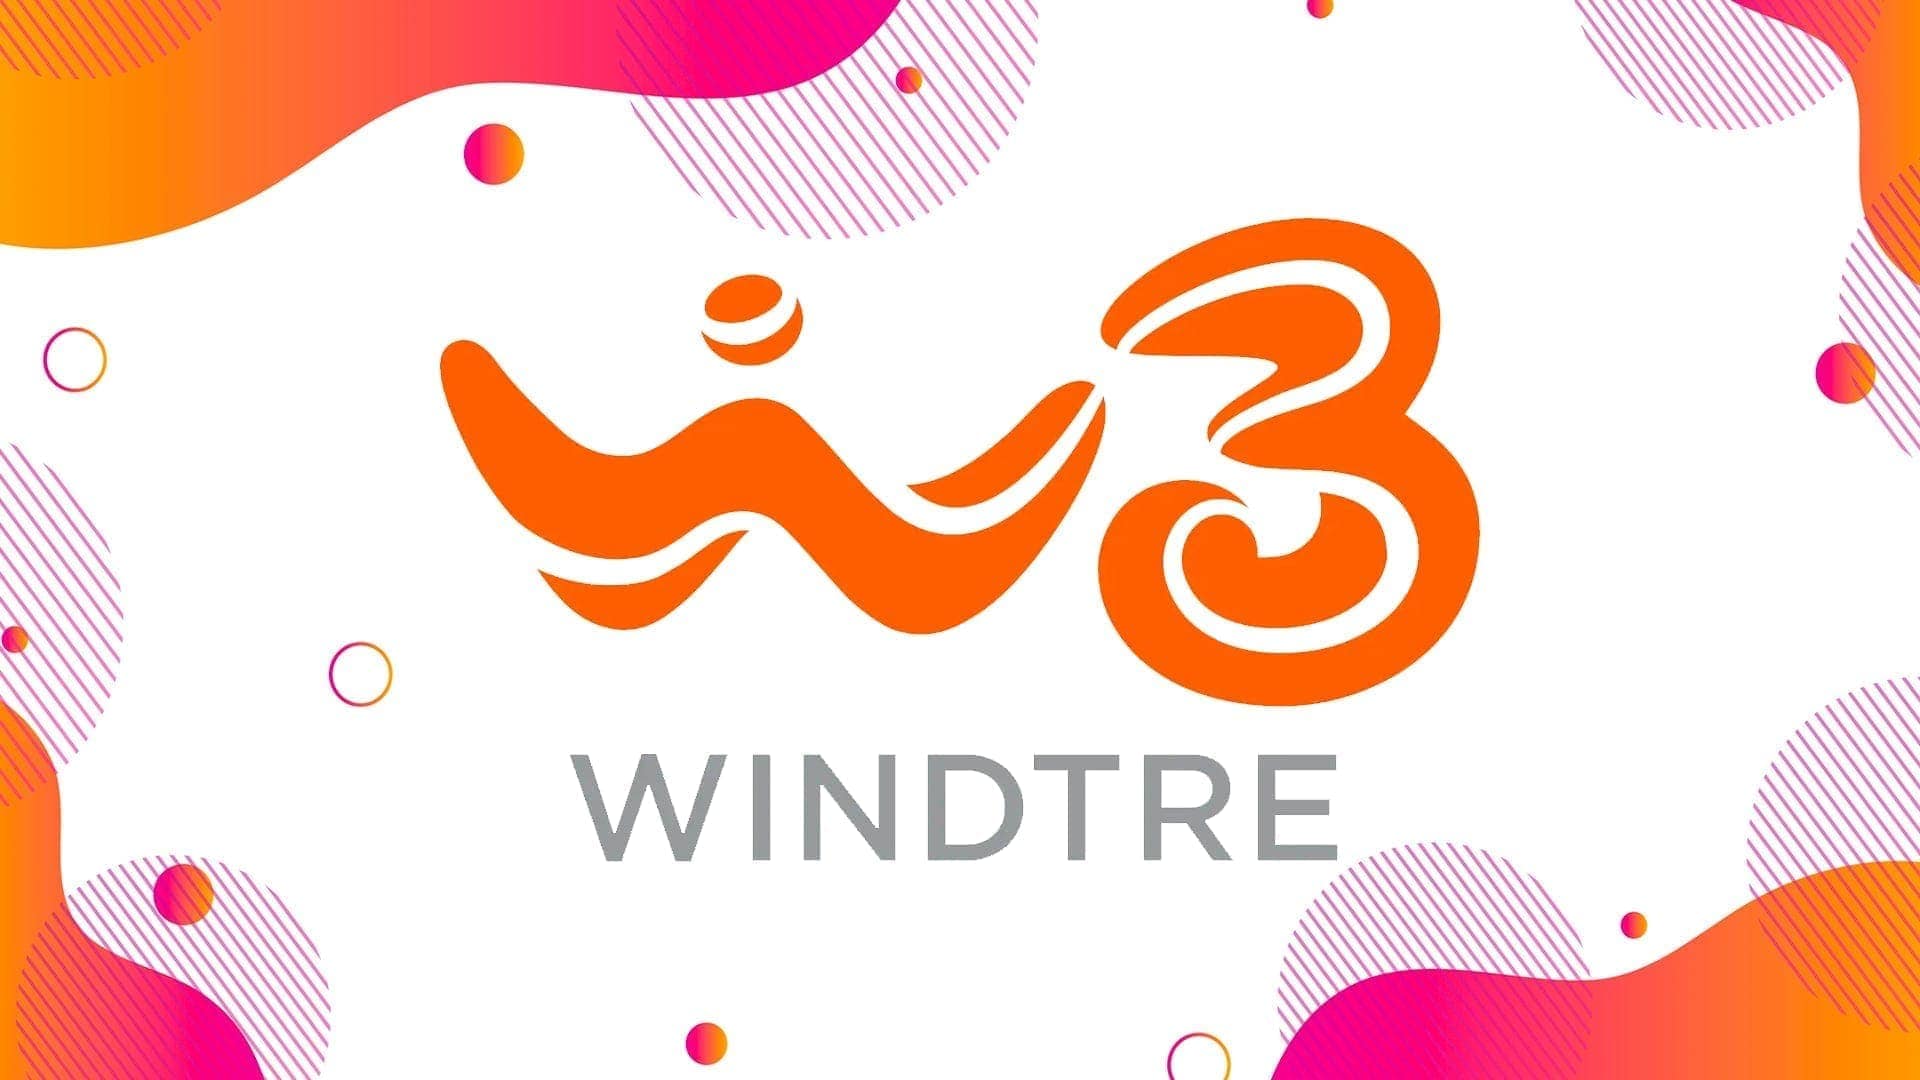 Il 5G di WindTre compatibile con nuovi smartphone: iPhone 13, Samsung, Xiaomi, Motorola e non solo